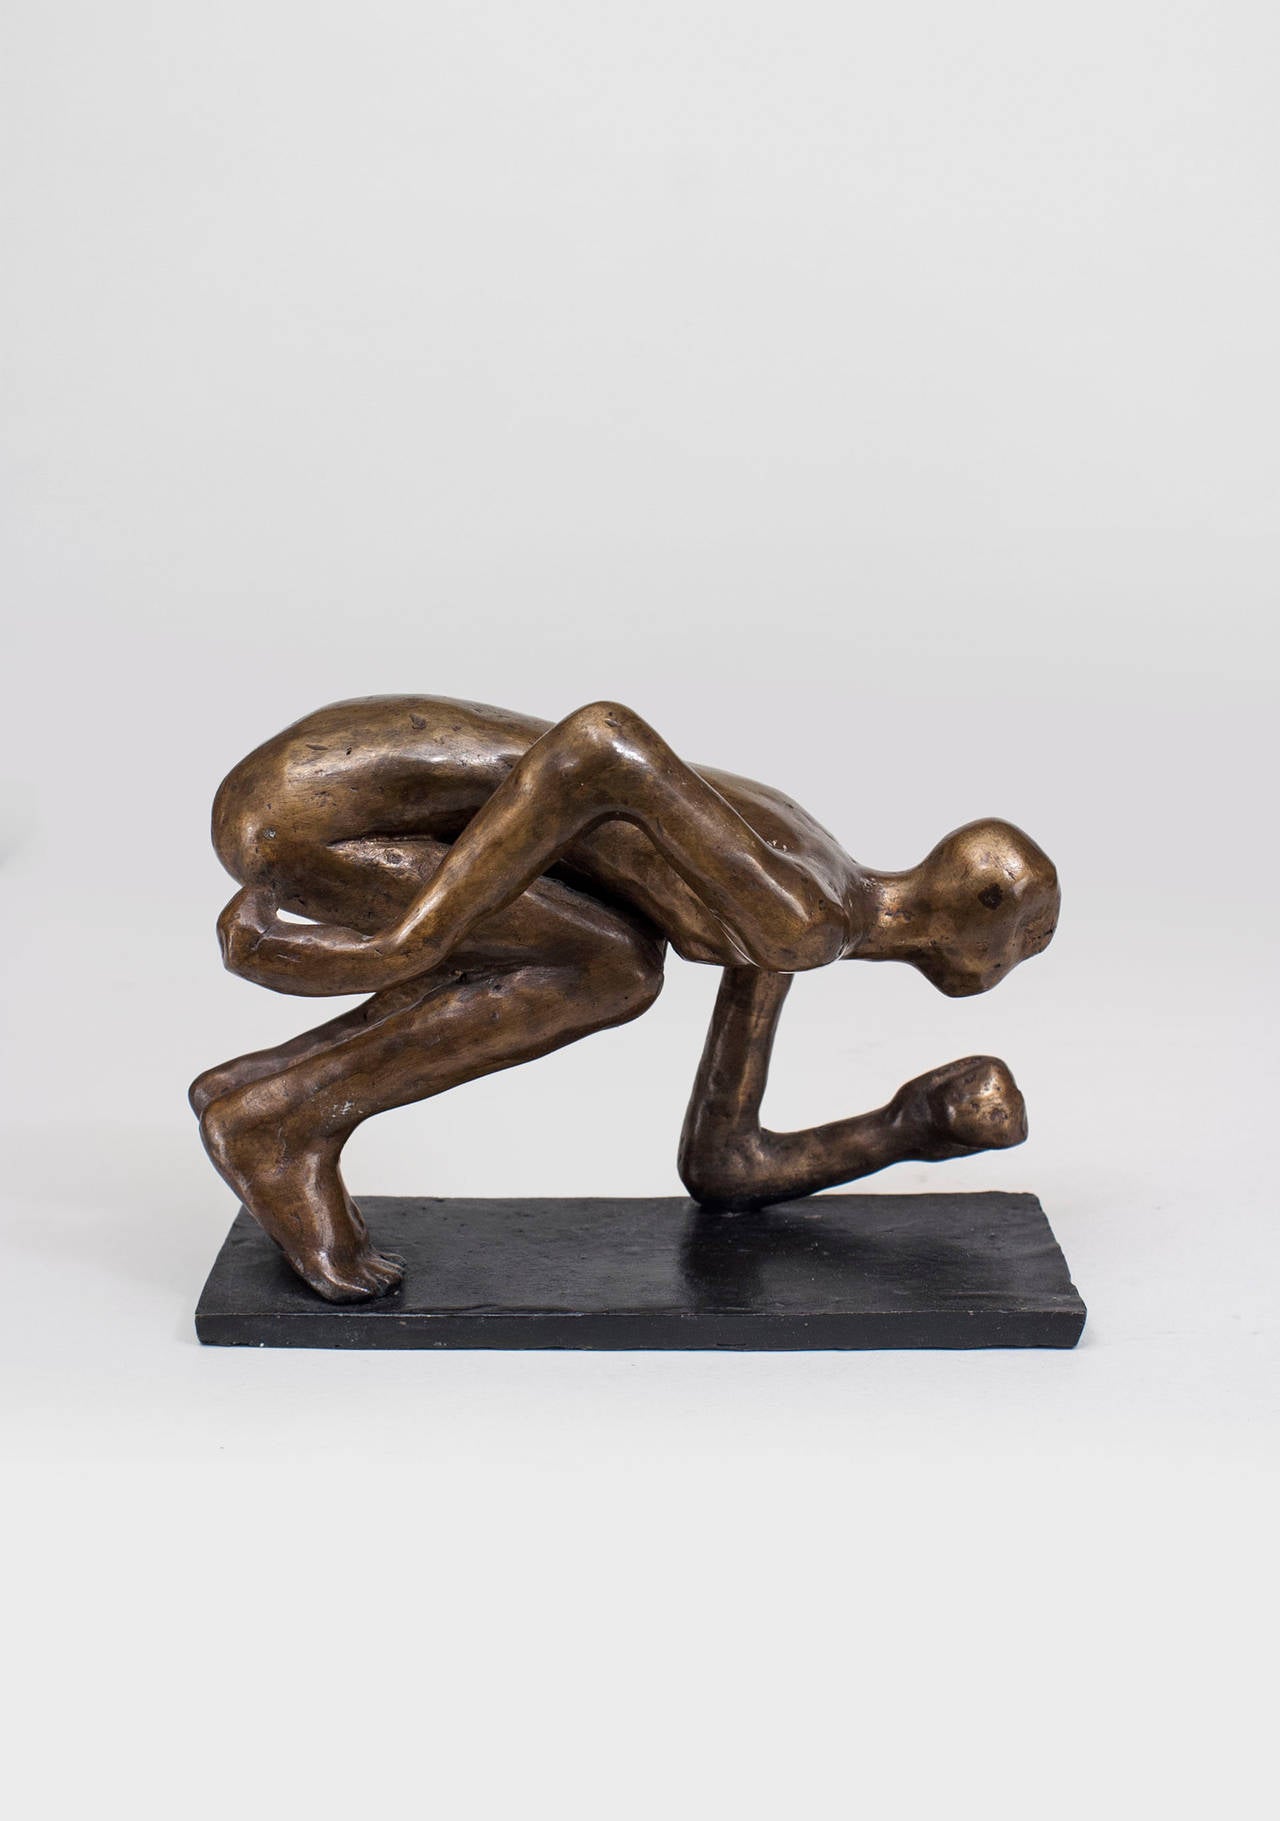 Amerikanische Post-Modern Design Bronzeskulptur einer knienden Figur mit gesenkten Armen auf einem schmalen rechteckigen Sockel, (signiert: CAROL BRUNS, 2003)
